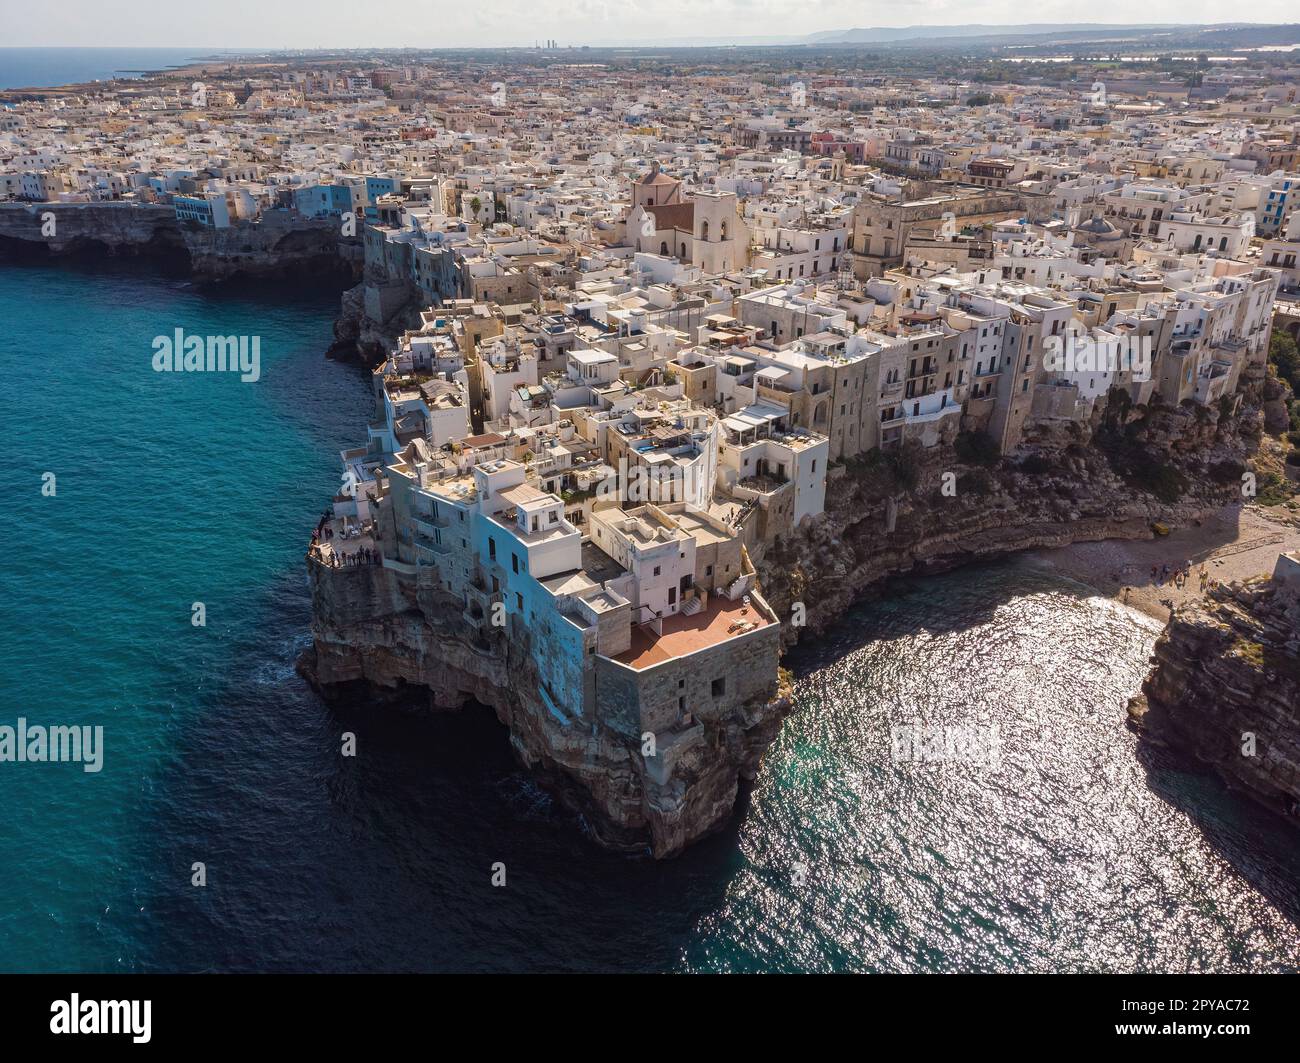 Veduta aerea del centro storico di Polignano a Mare, una piccola città lungo la costa che si affaccia sul Mar Mediterraneo, Bari, Puglia, Italia. Foto Stock